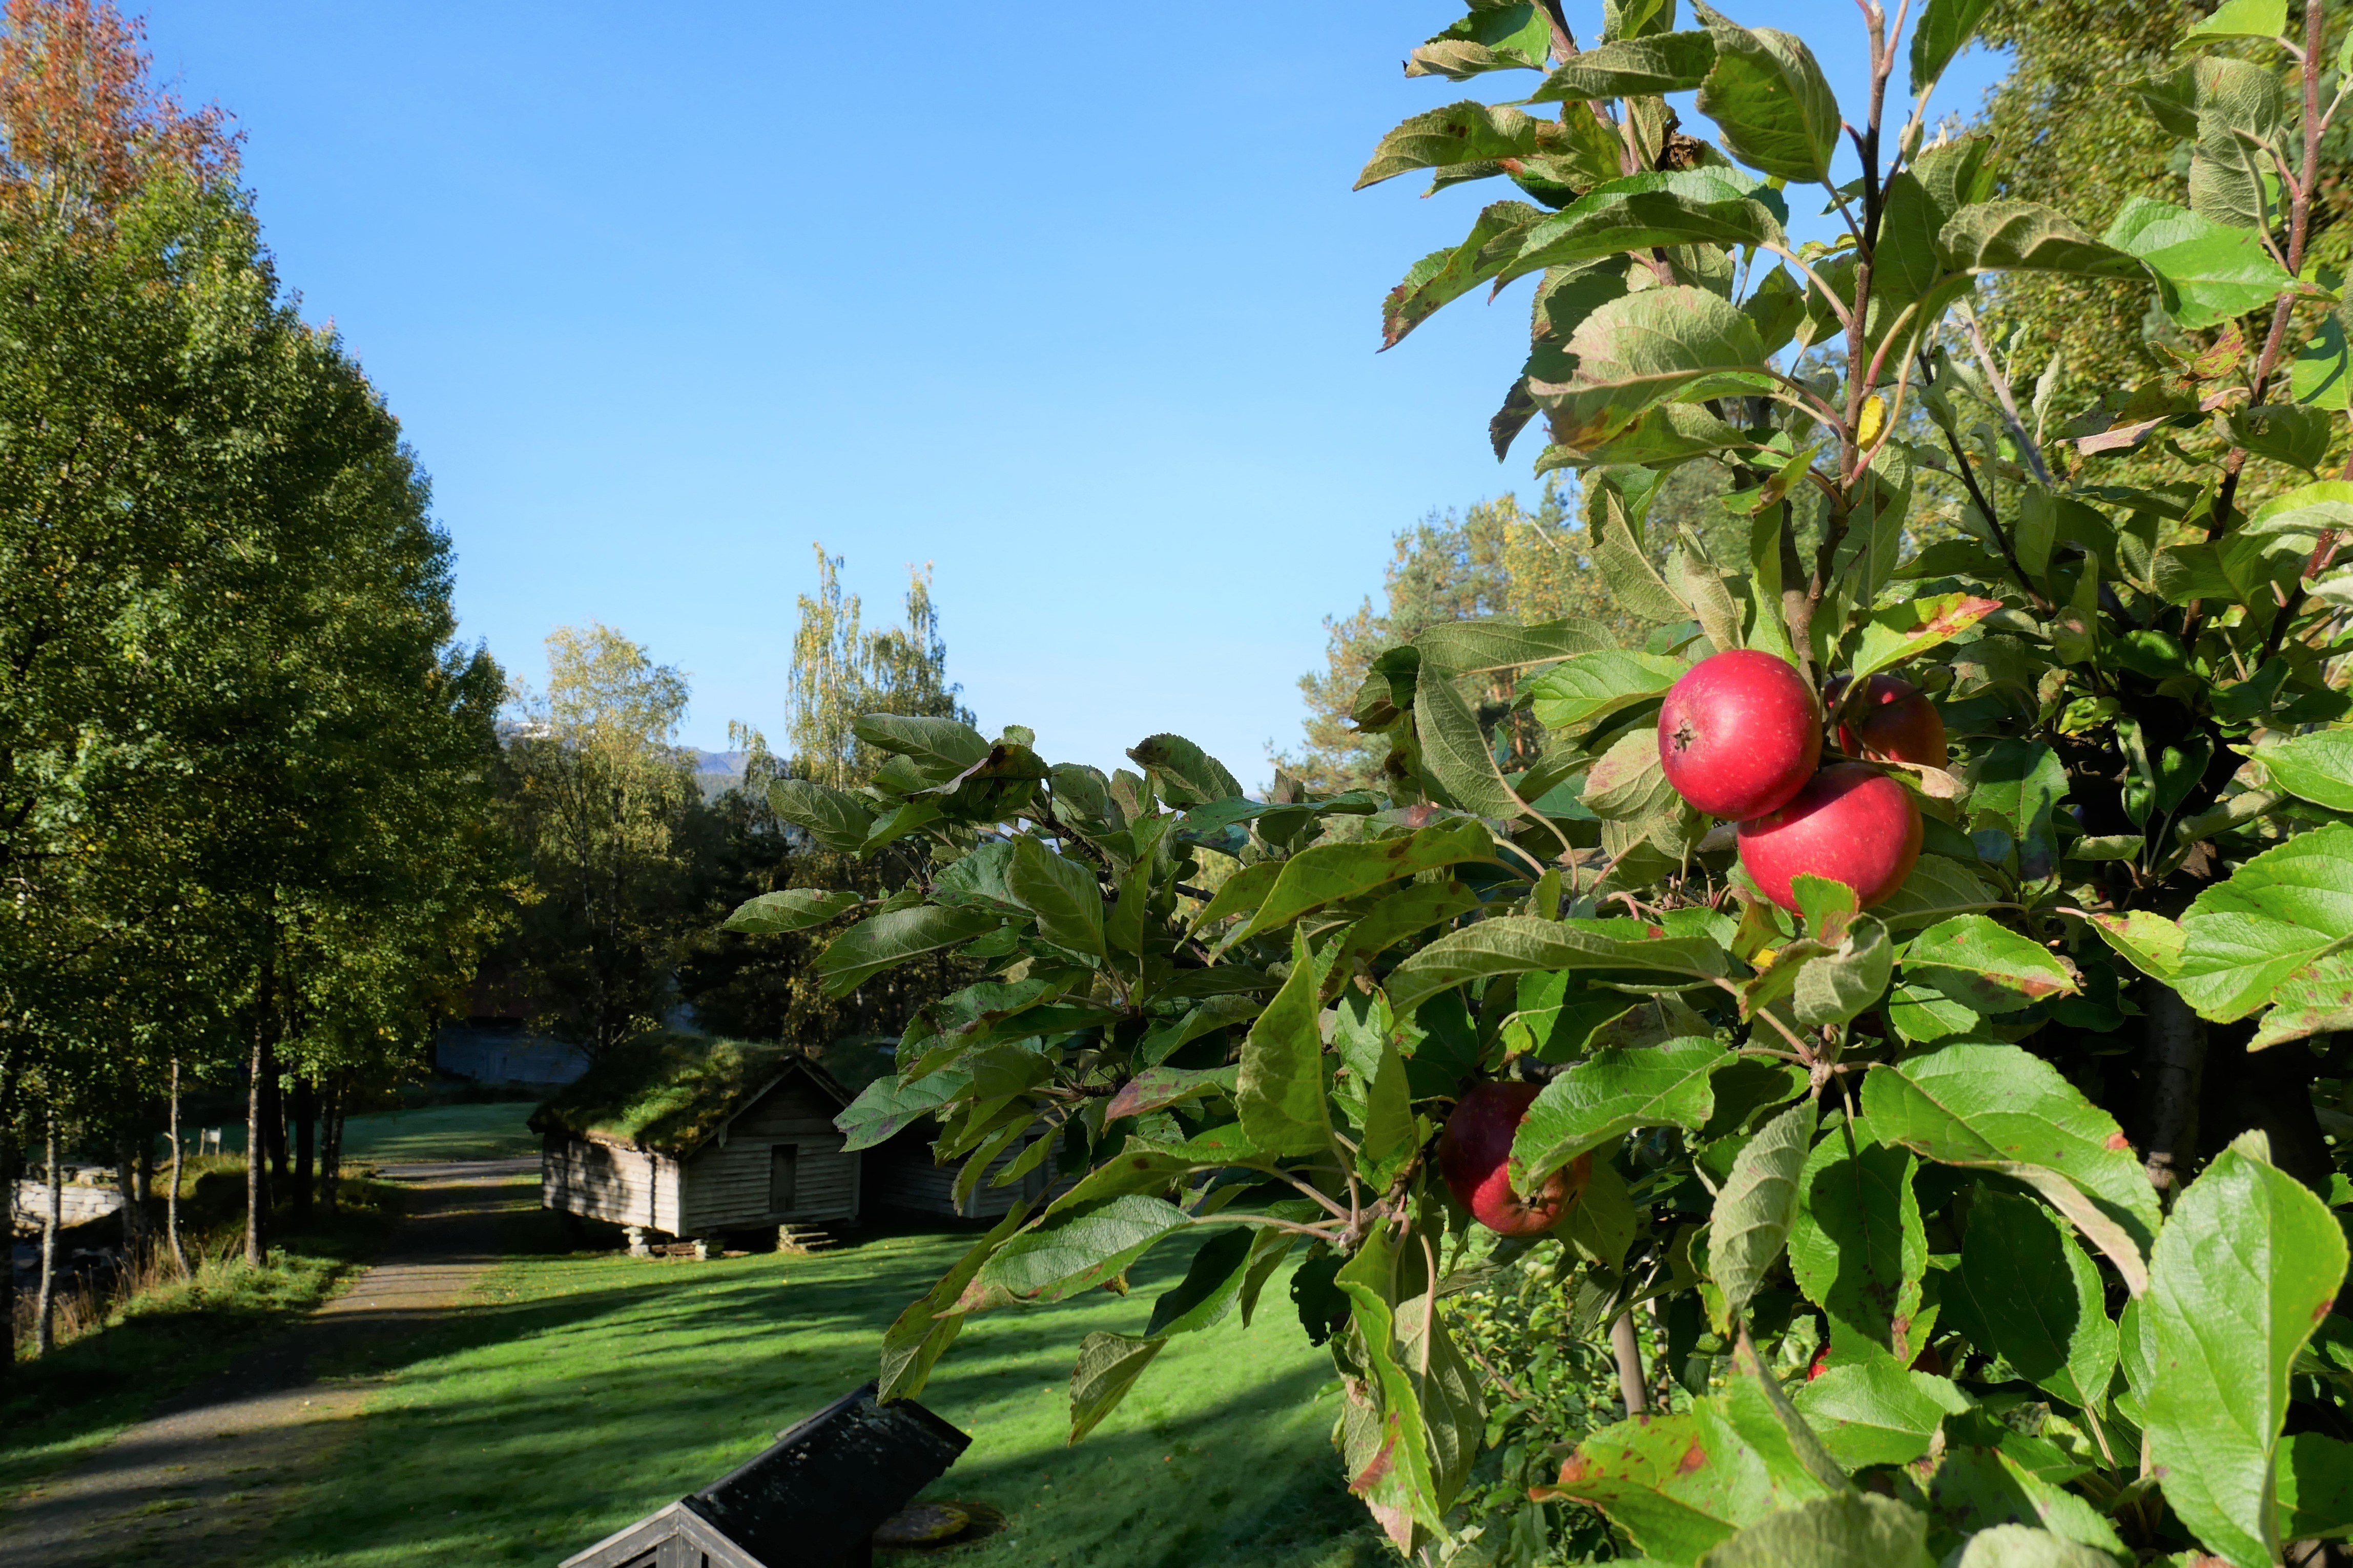 Eple på epletre i friluftsmuseet, i bakgrunnen er det grønne trær og gamle hus.